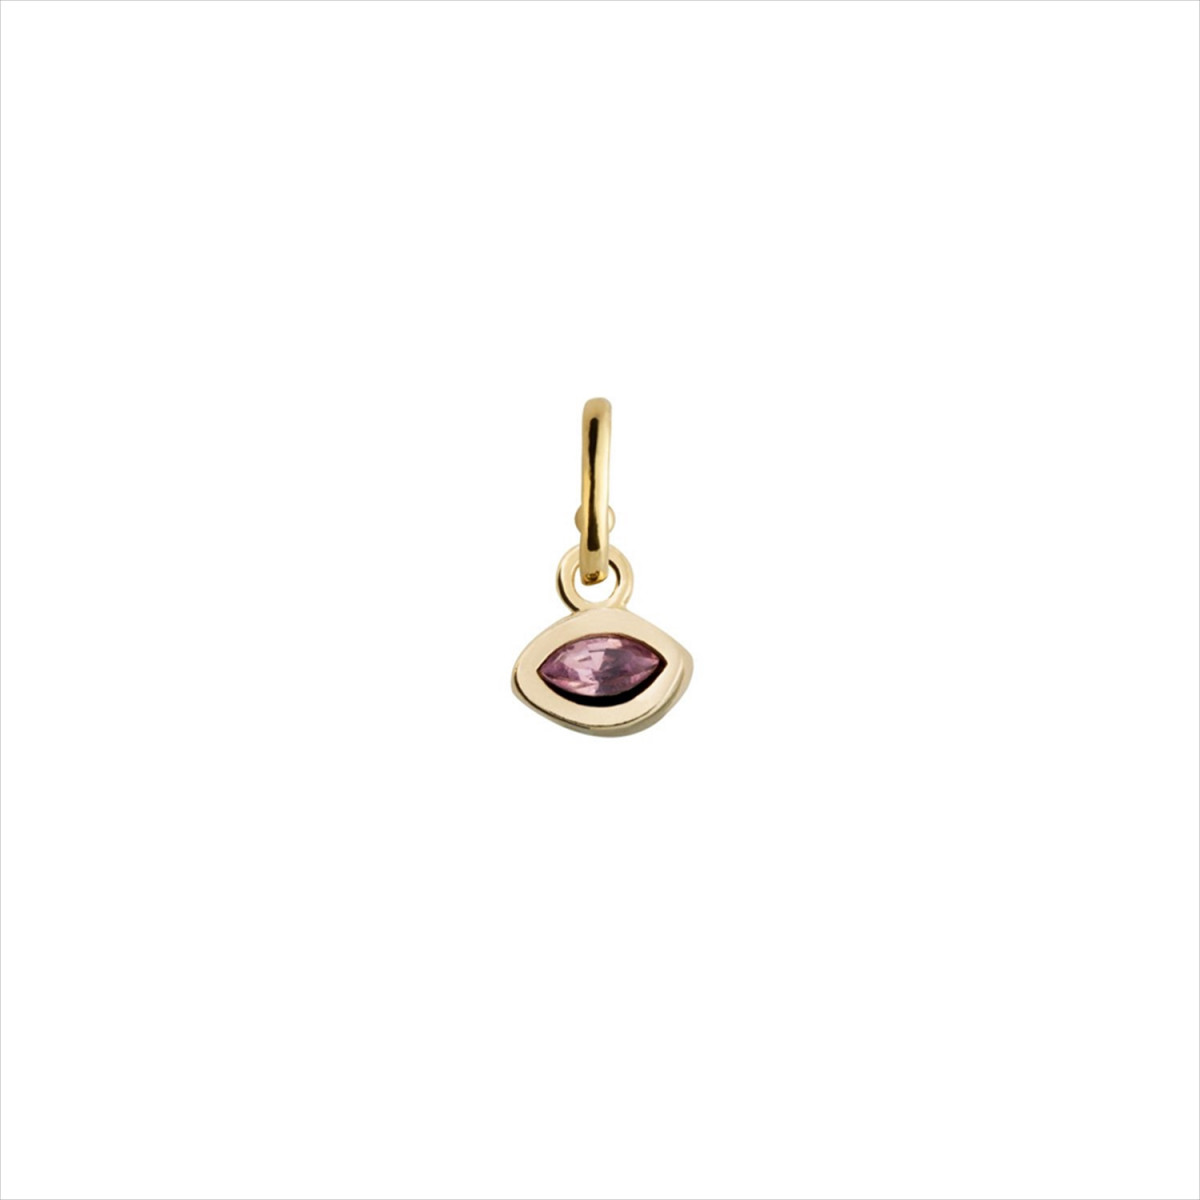 Charm colgante ojo con cristal swarowvski color rosado, bañado en oro.  ARO NO INCLUIDO. Uno de 50